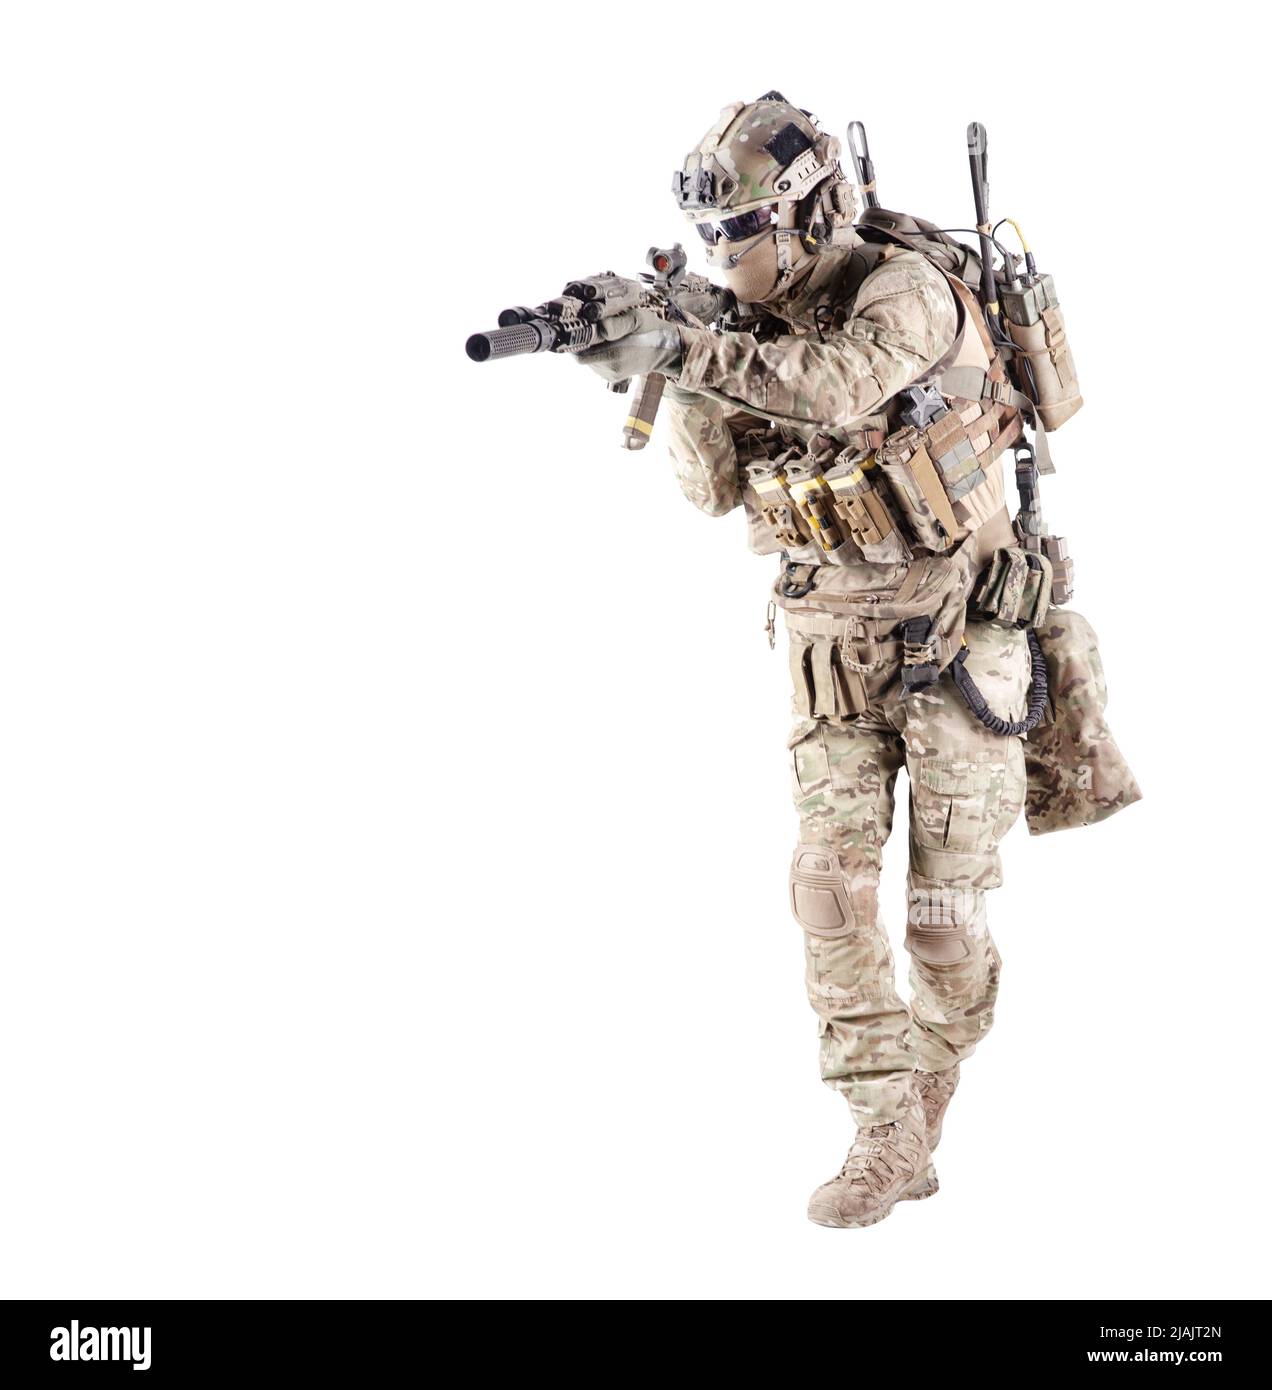 Armee-Infanterist in Tarnuniform und Kampfhelm, mit dem Ziel Sturmgewehr. Stockfoto